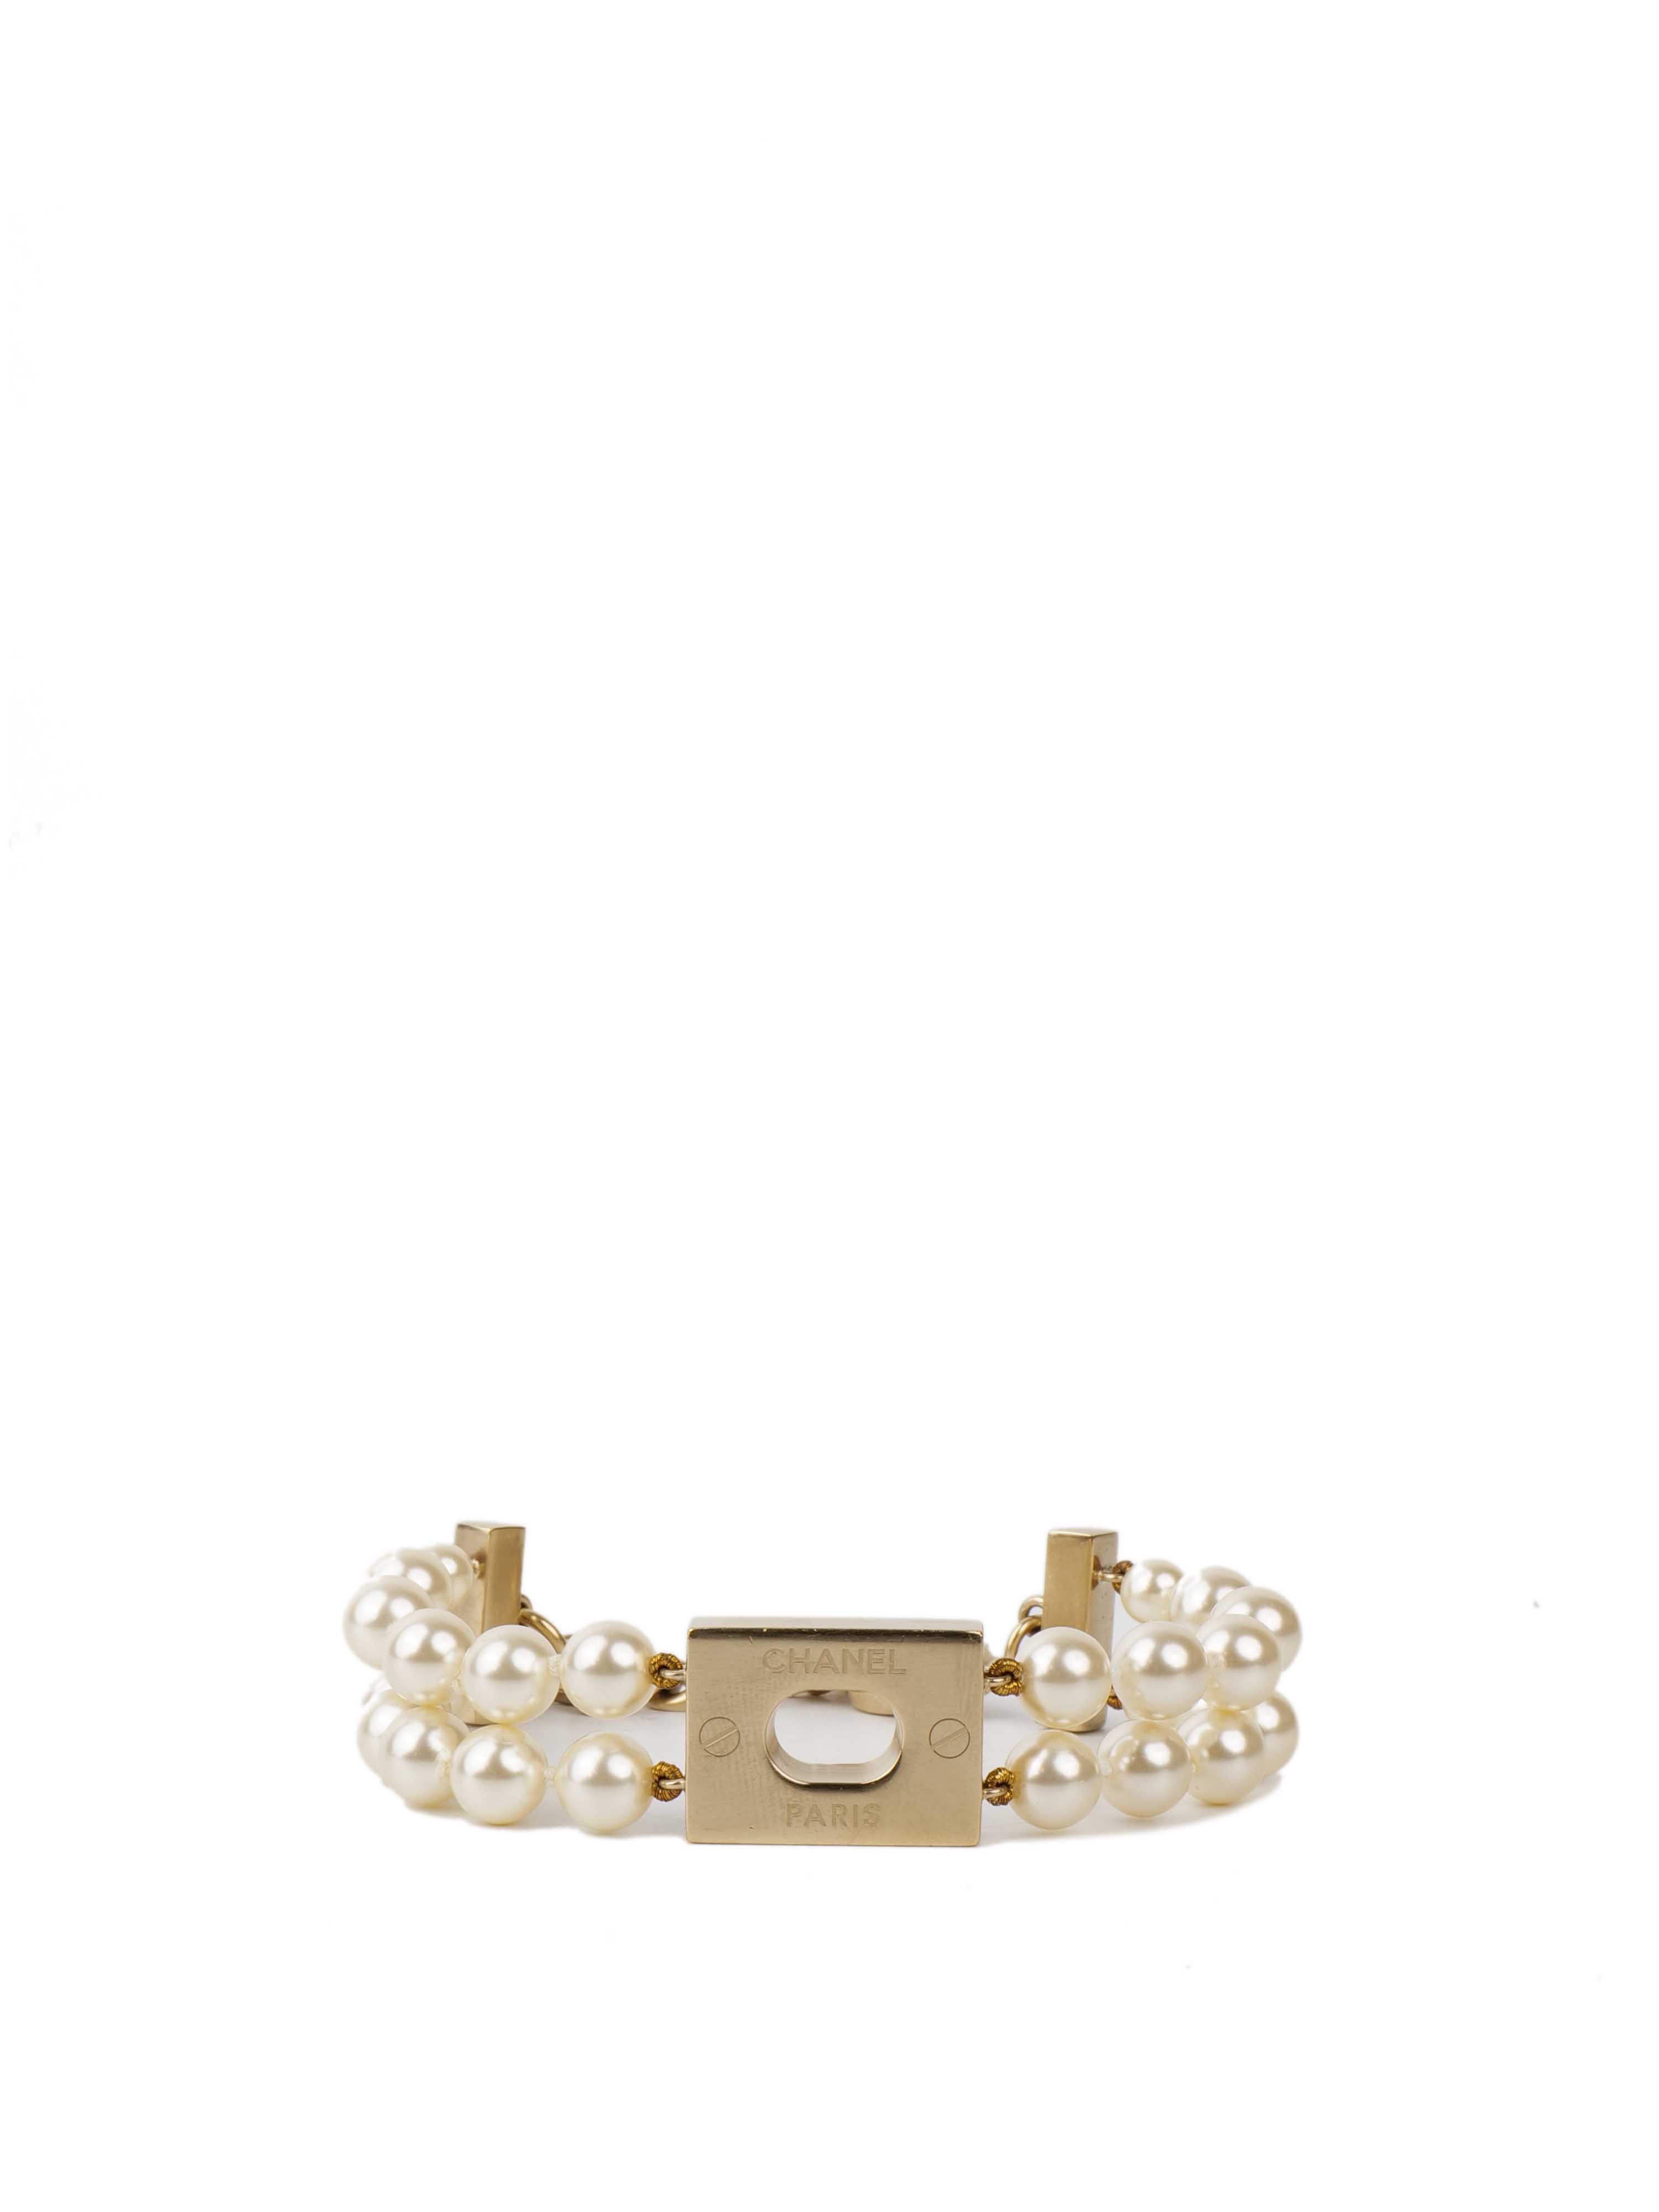 Chanel Pearl Bracelet.